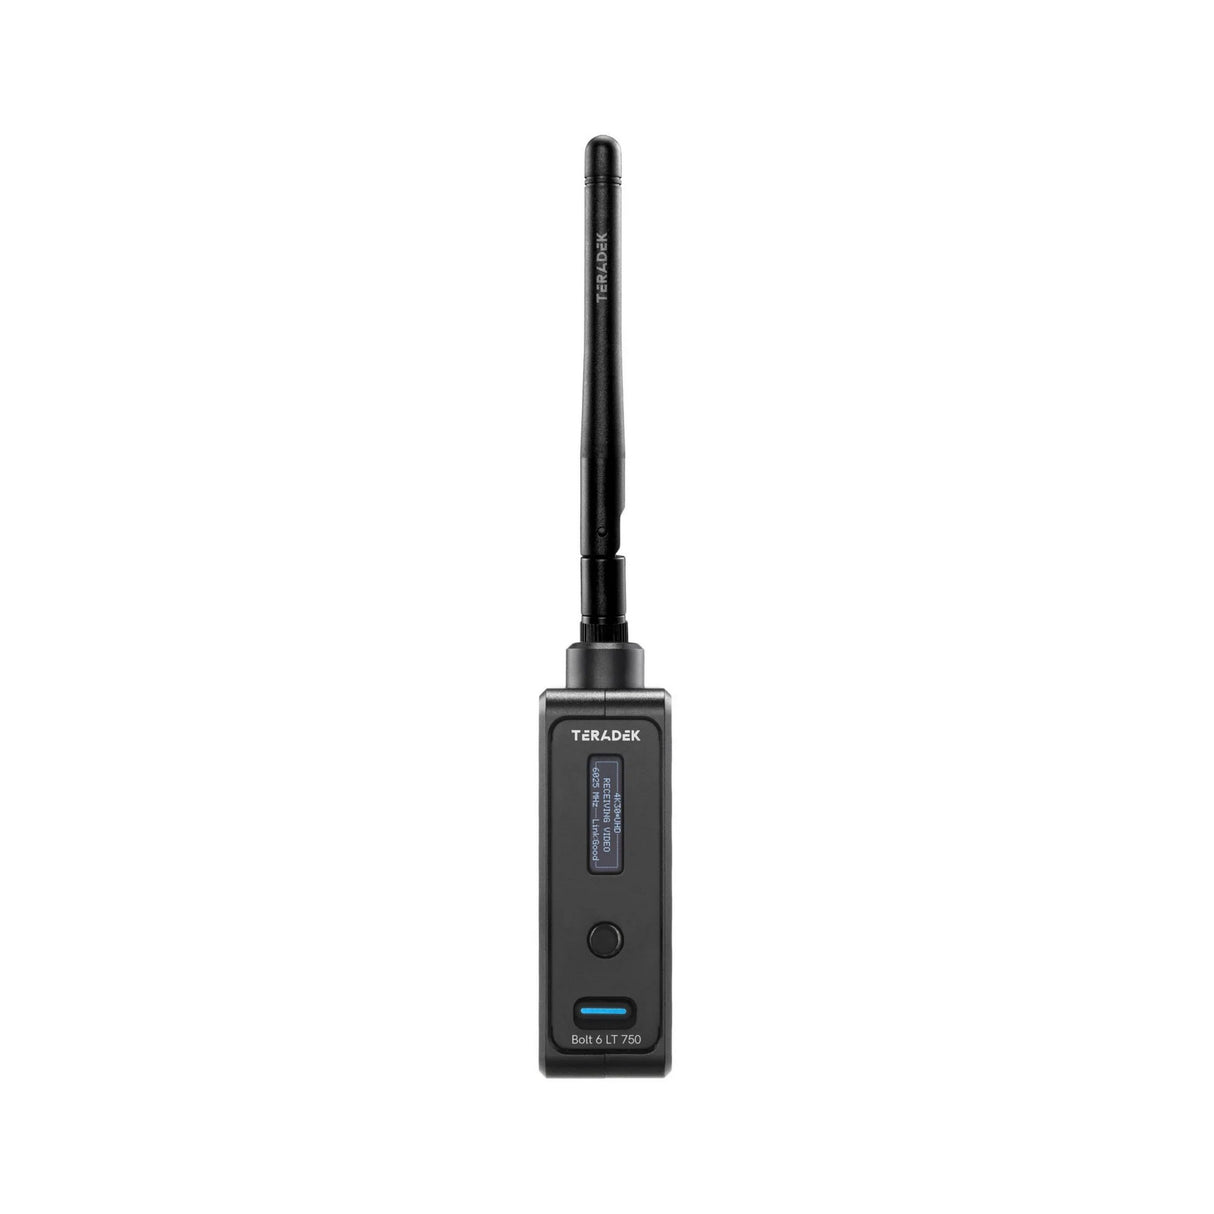 Teradek 10-2262-V Bolt 6 LT 750 Wireless Video Receiver, V-Mount